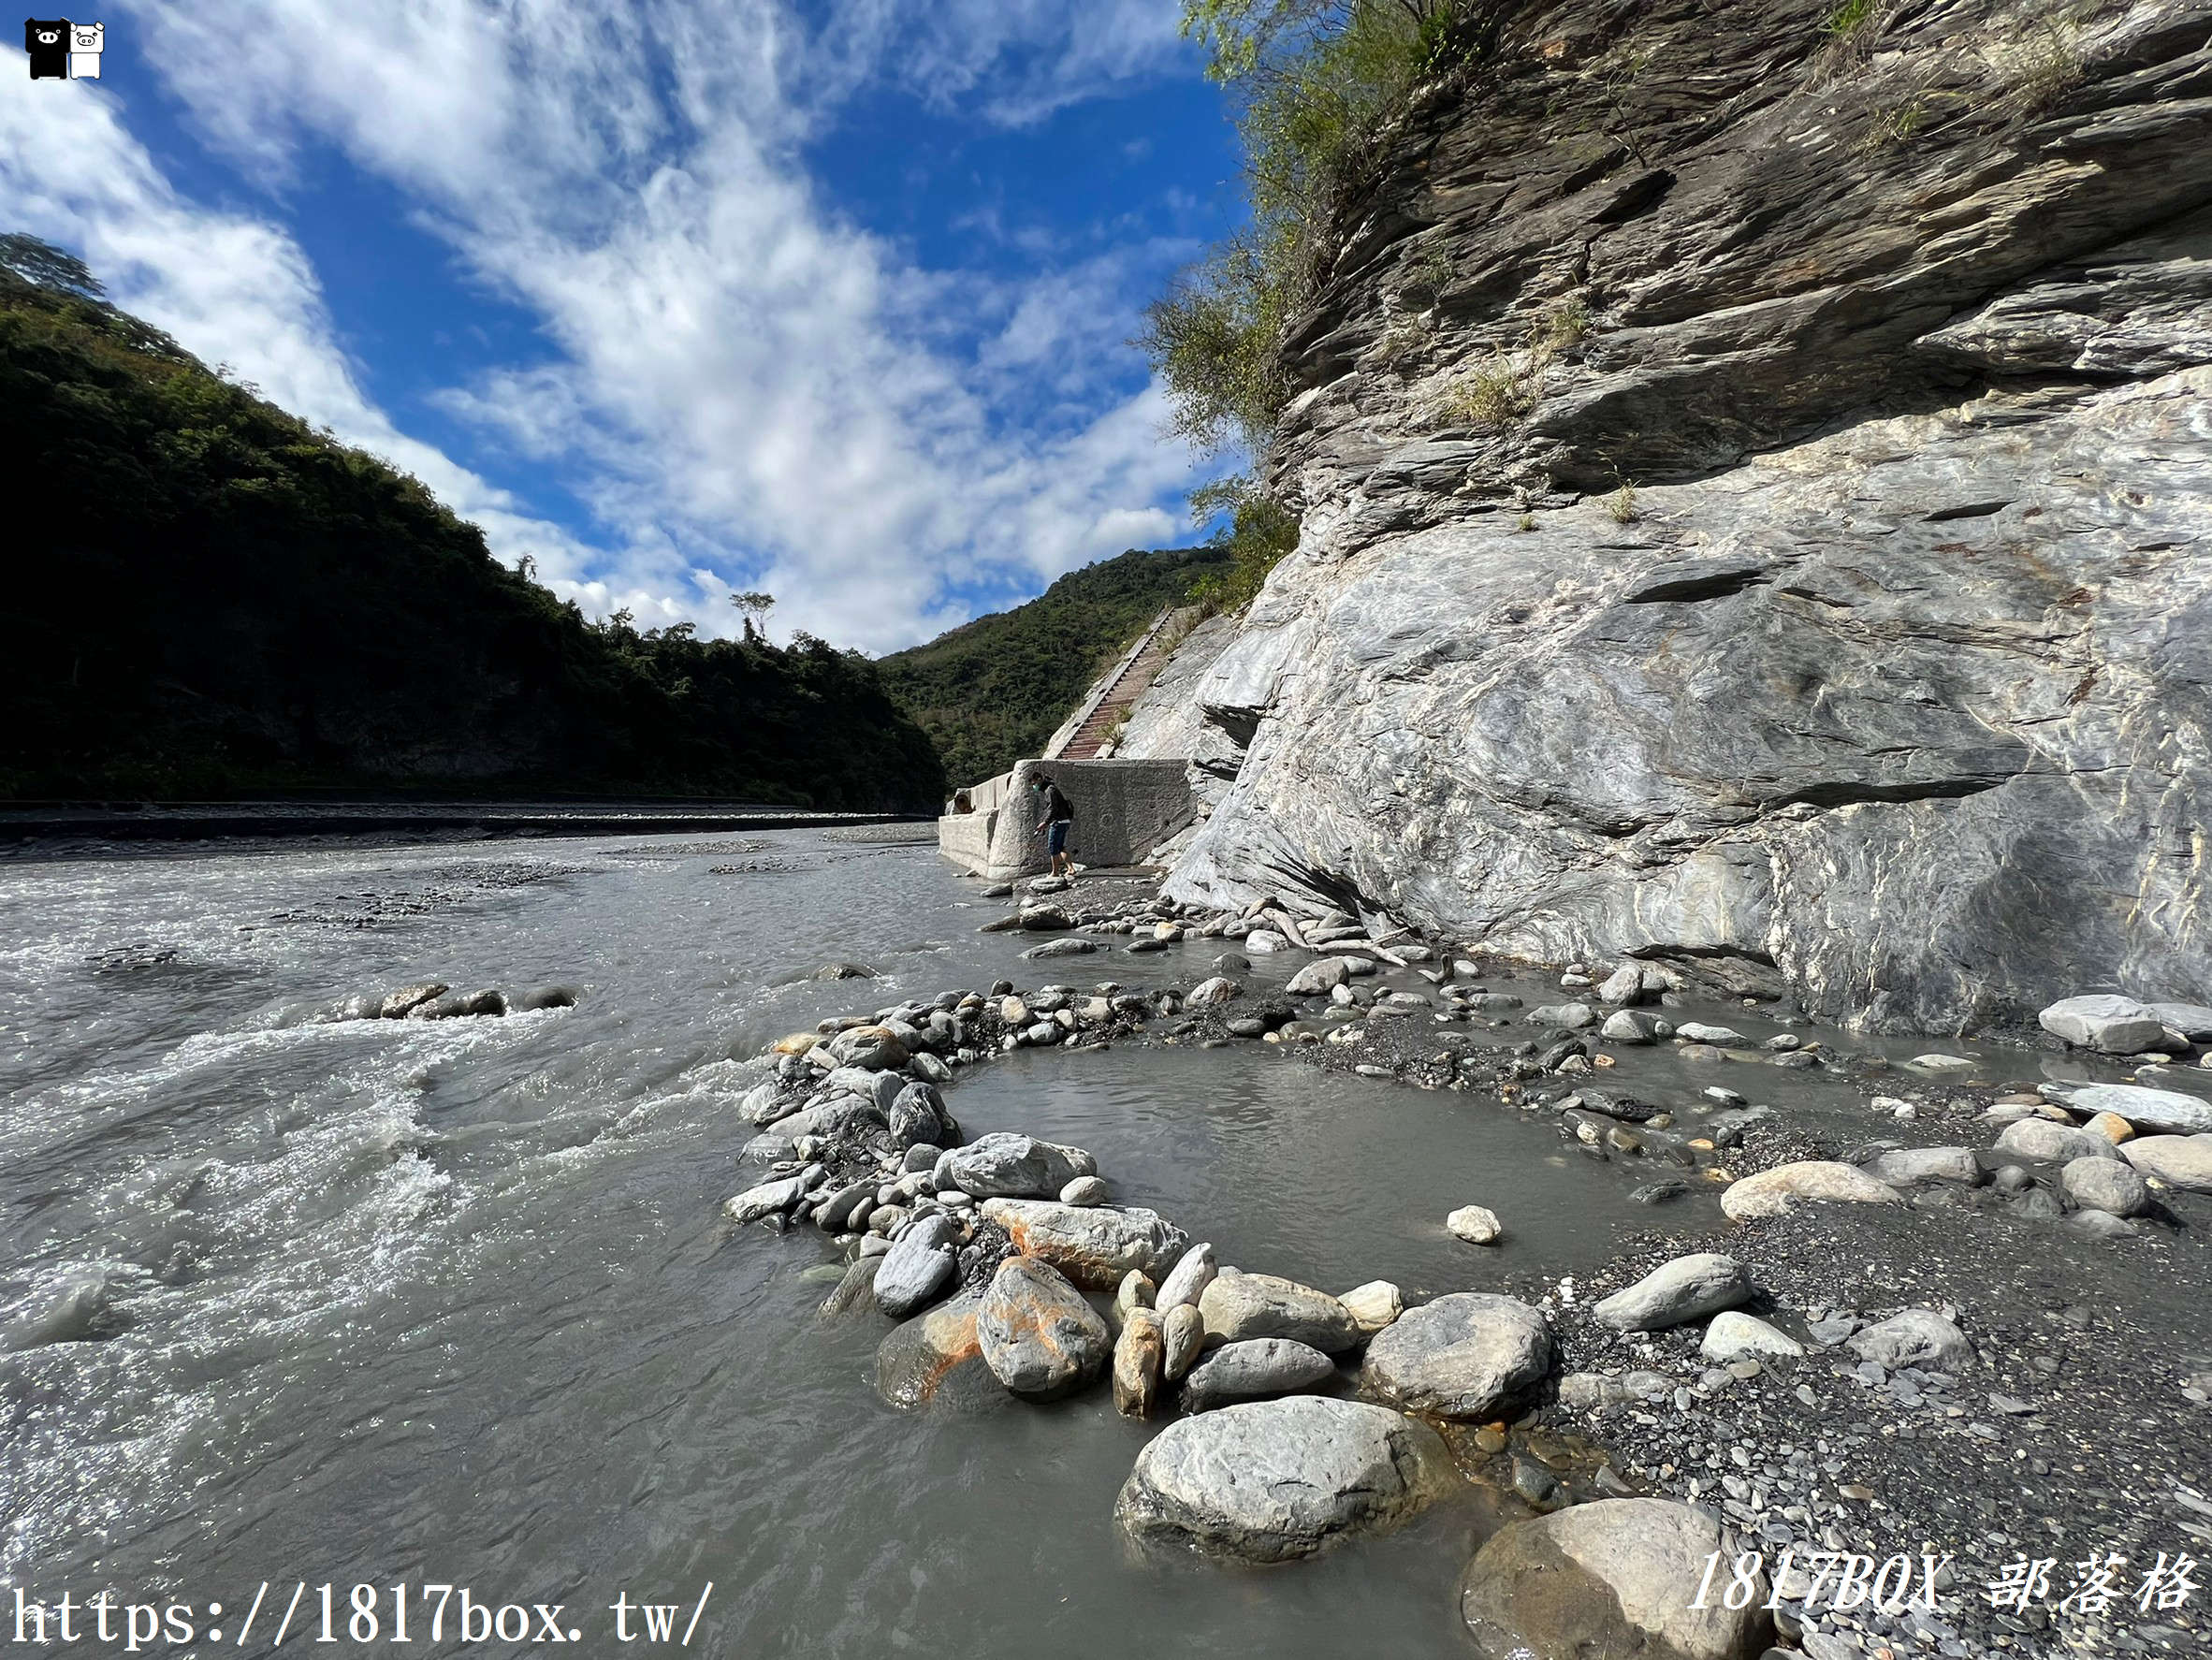 【台東。延平】紅葉紅橋野溪溫泉。台灣最容易親近的露天溫泉之一